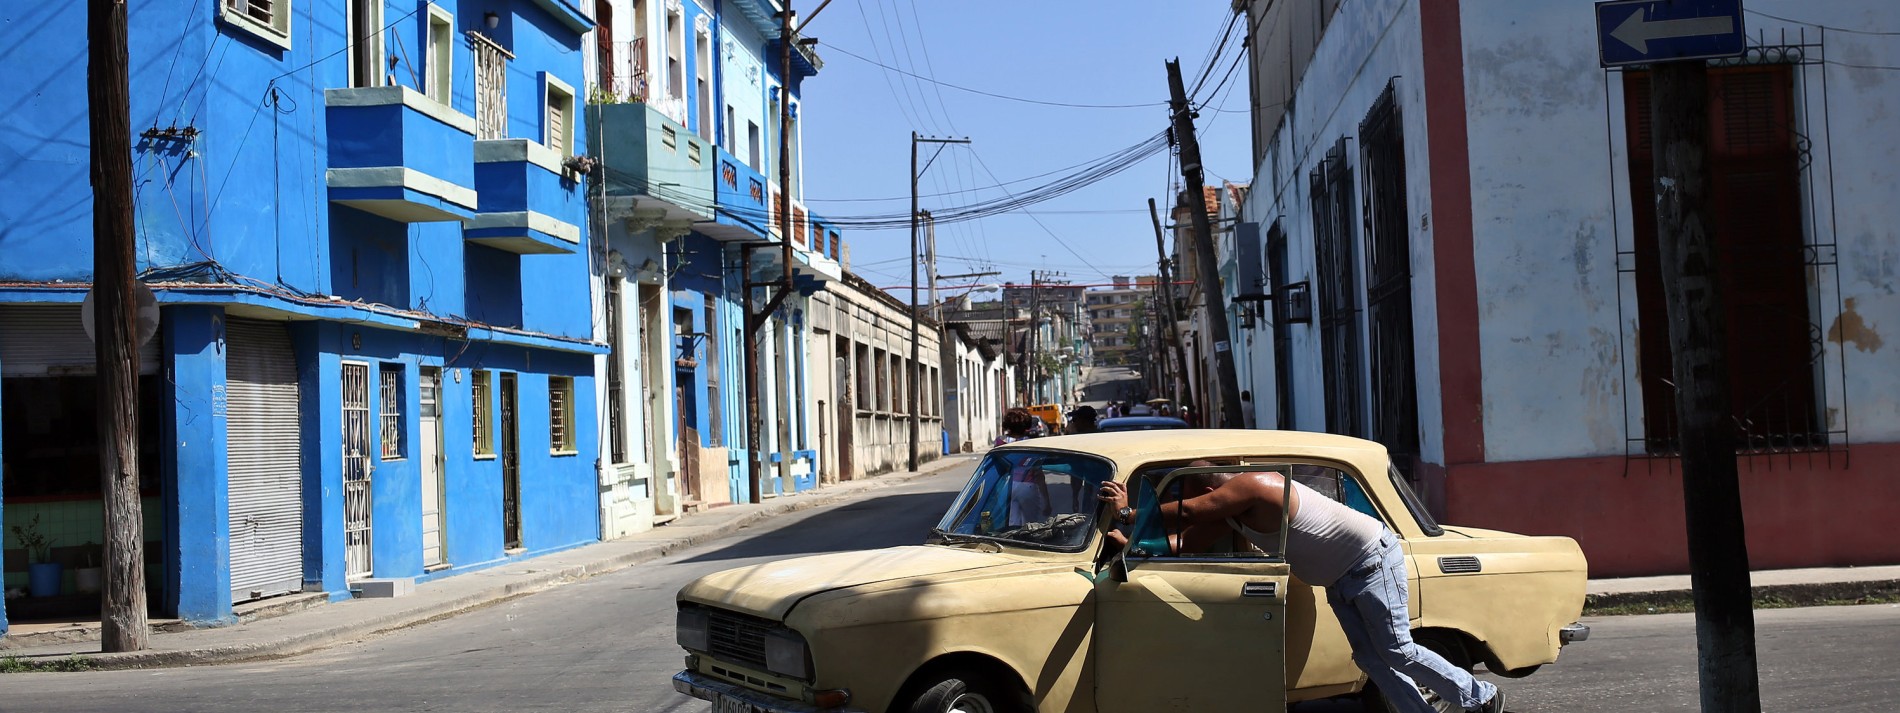 Warum Kuba keinen Grund zum Feiern hat